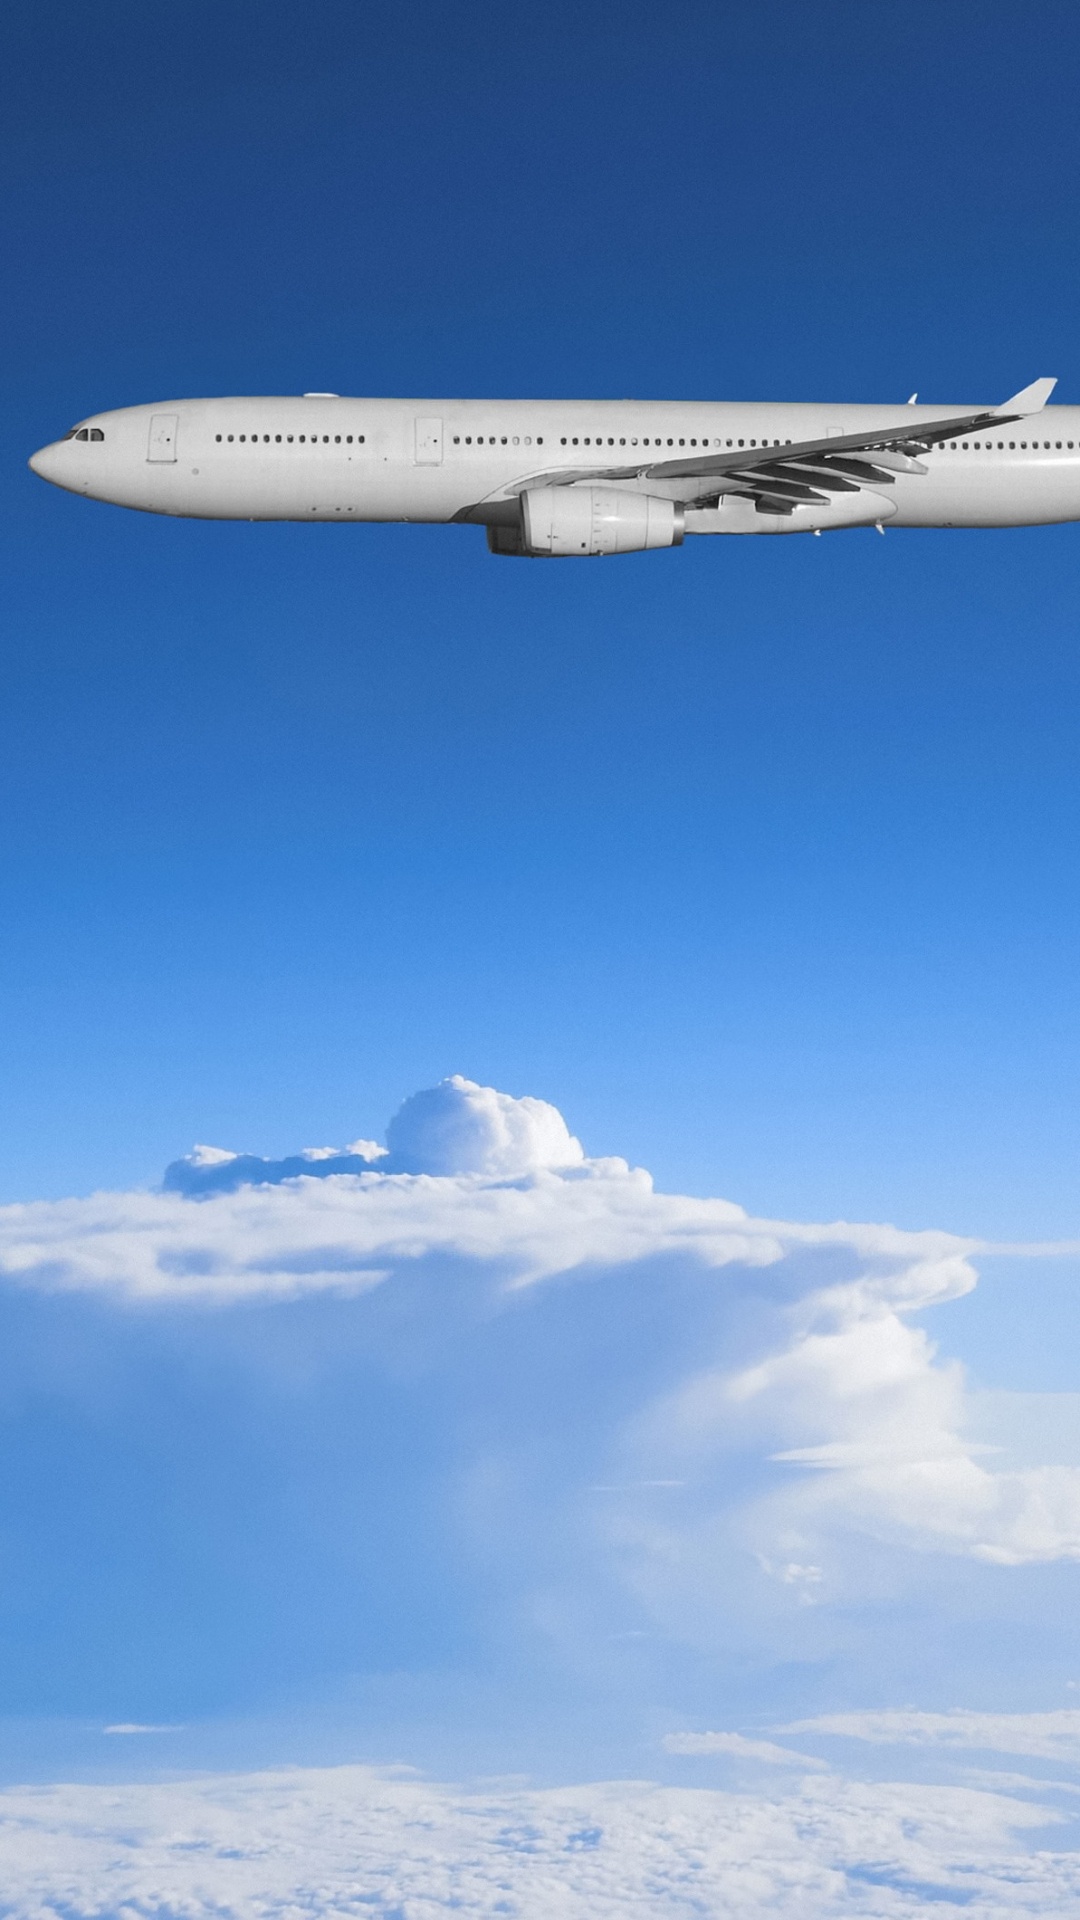 Avion Blanc Volant Sous le Ciel Bleu Pendant la Journée. Wallpaper in 1080x1920 Resolution